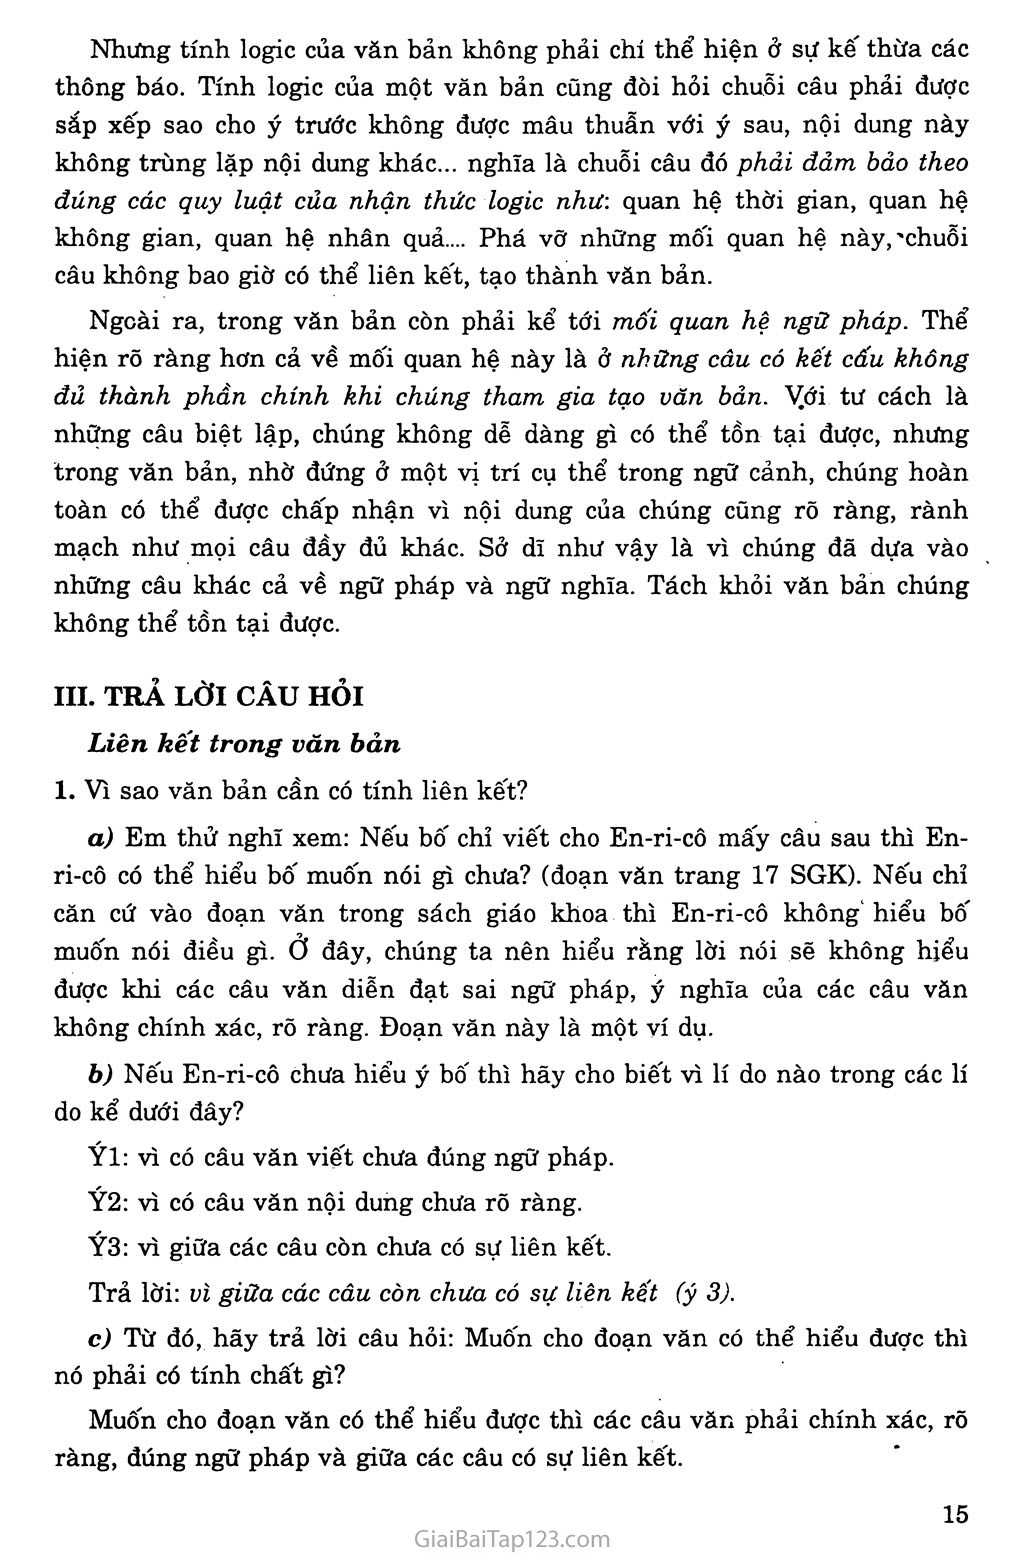 Tính liên kết trong văn bản tiếng Việt